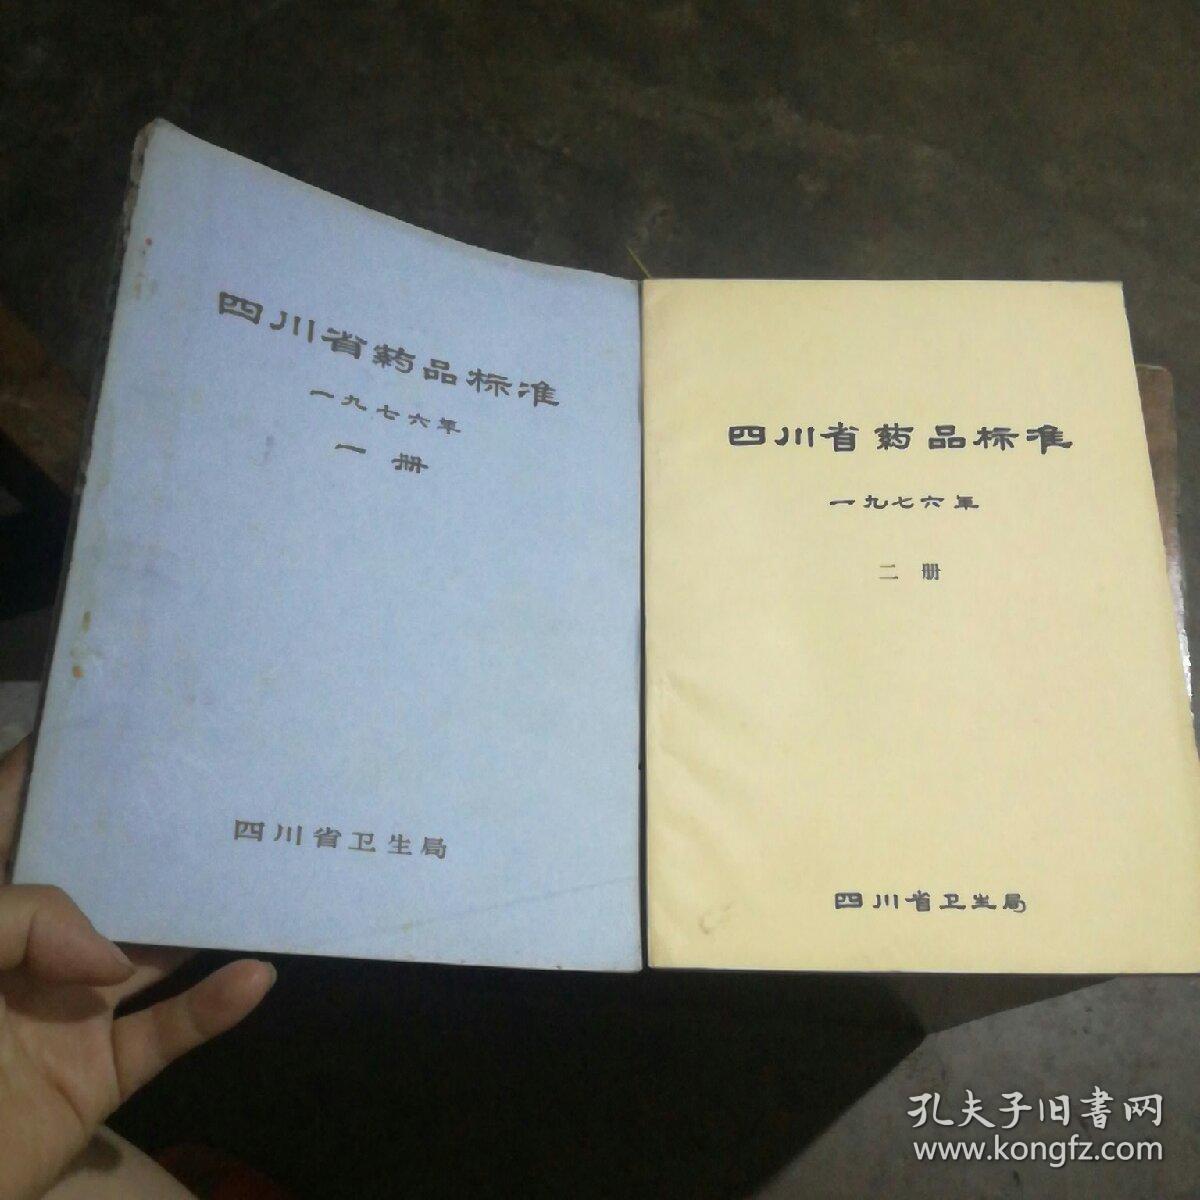 四川省药品标准(一、二册合售)1976